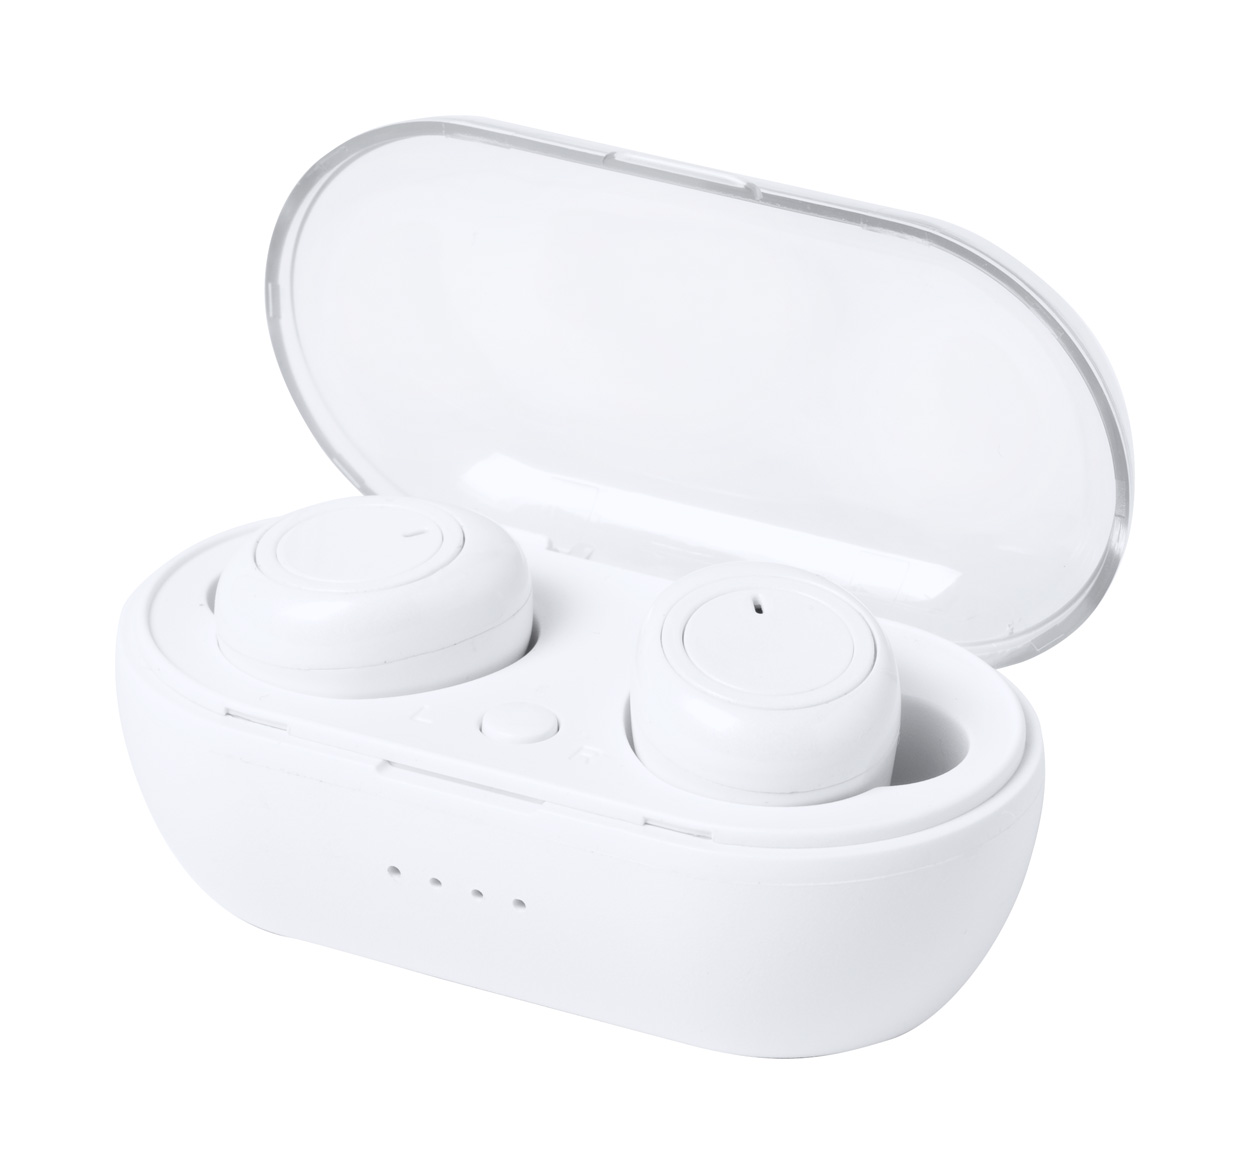 Plastová bezdrátová sluchátka MERKUS v nabíjecí krabičce - bílá